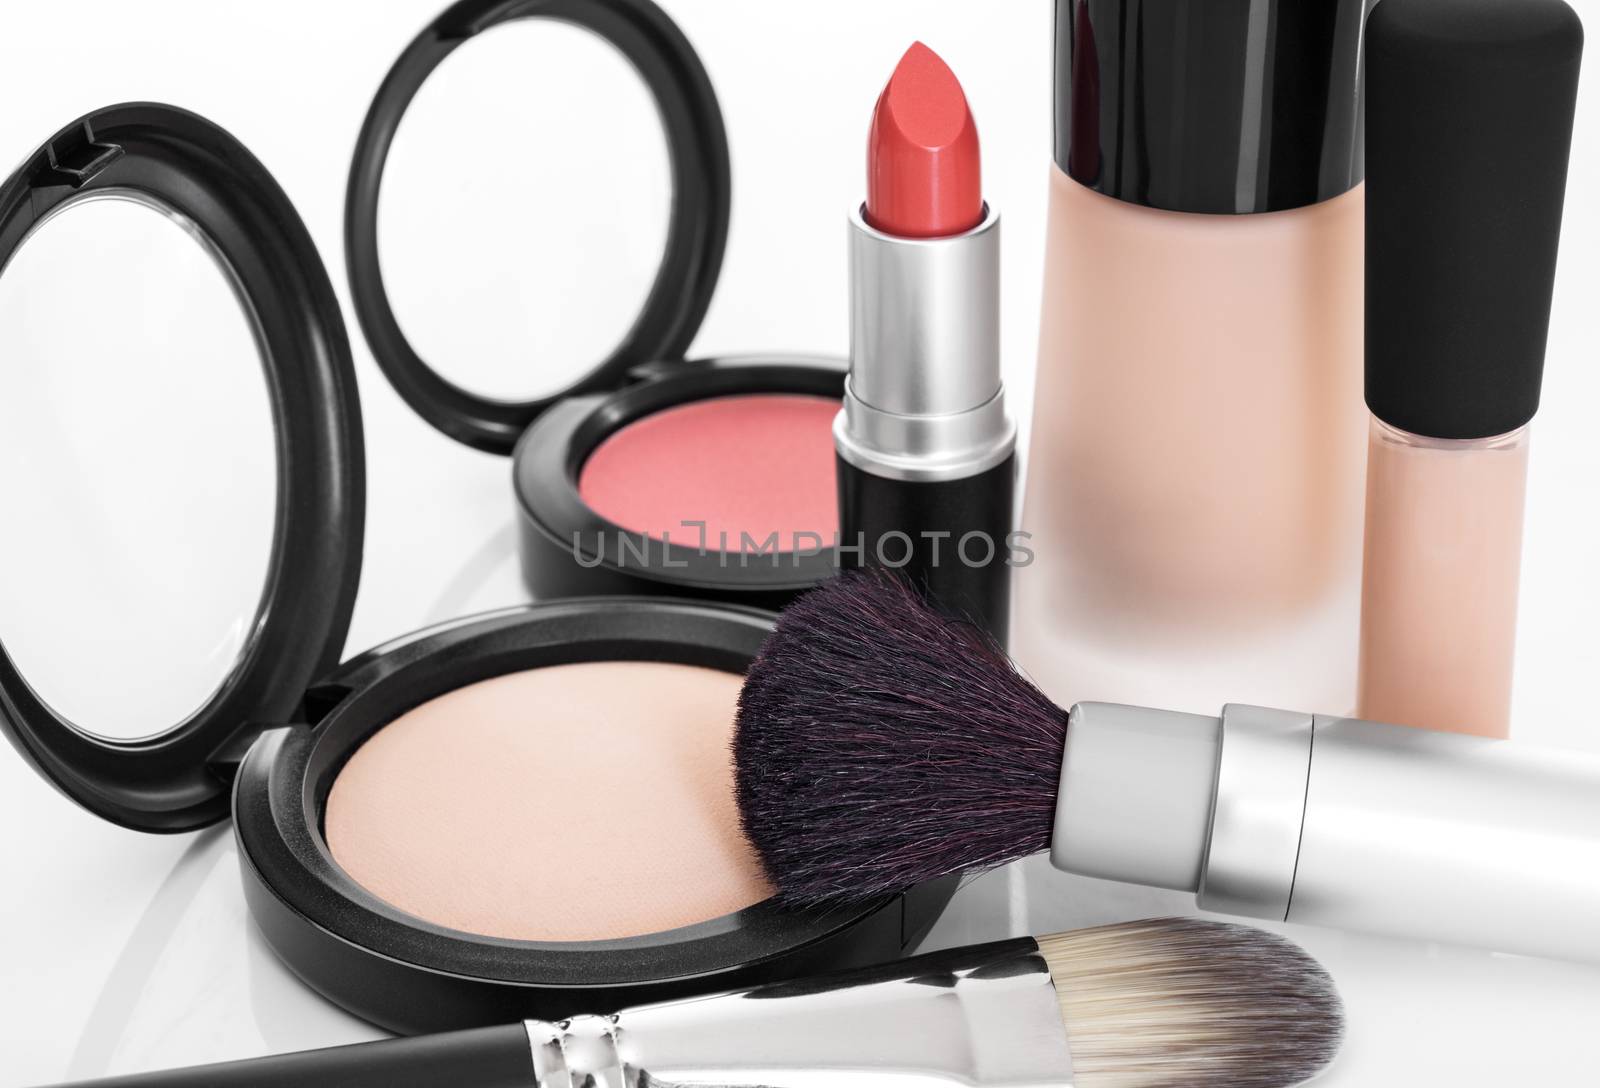 Elegant makeup collection by anikasalsera